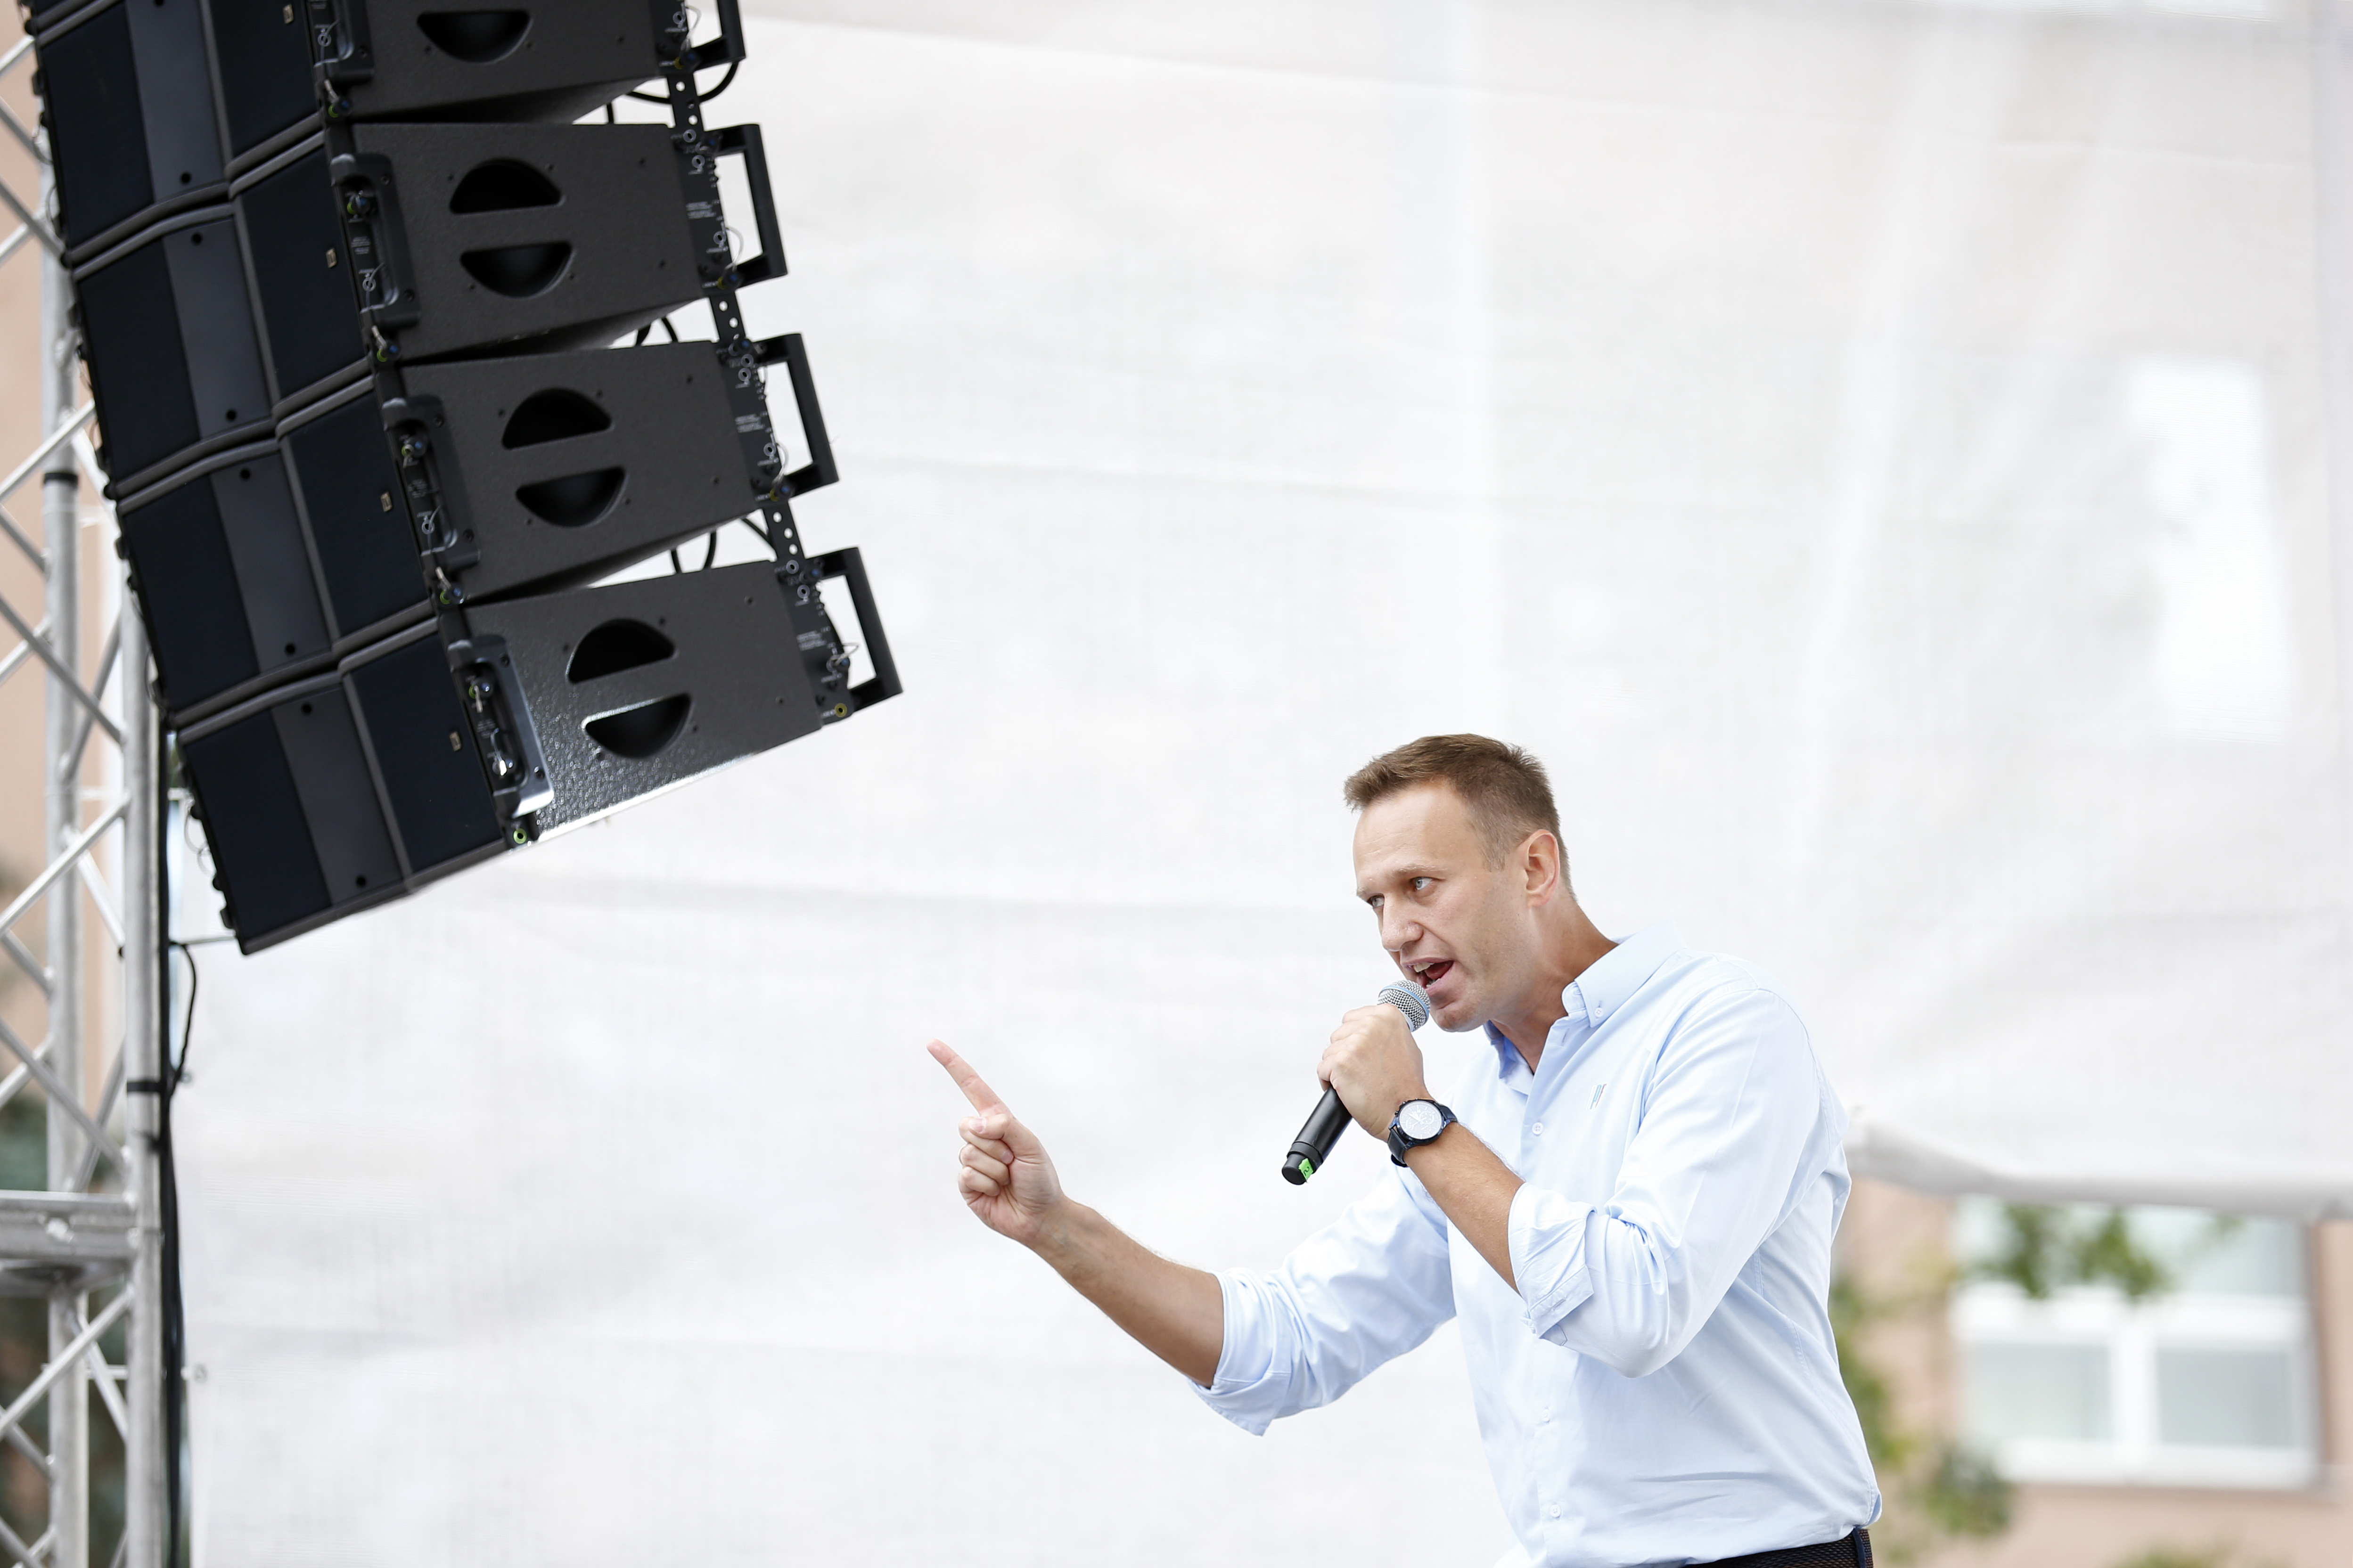 Megmérgezhették Alekszej Navalnijt, az orosz ellenzék vezéralakját